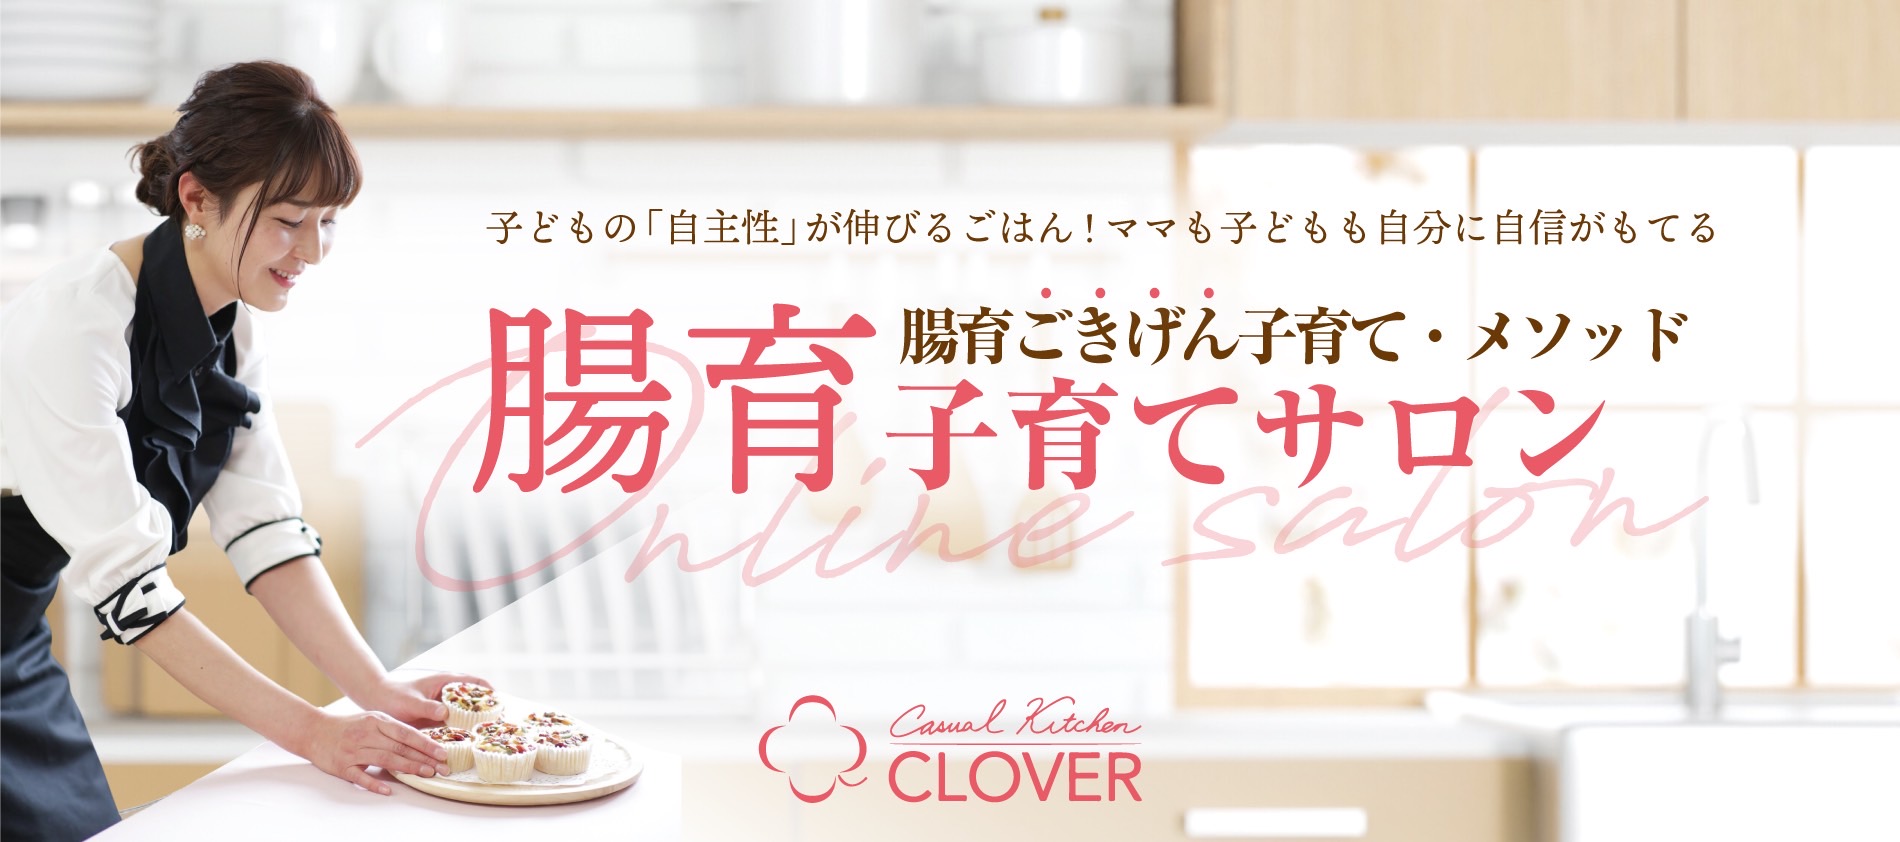 会員制 腸育オンラインサロン【Clover】